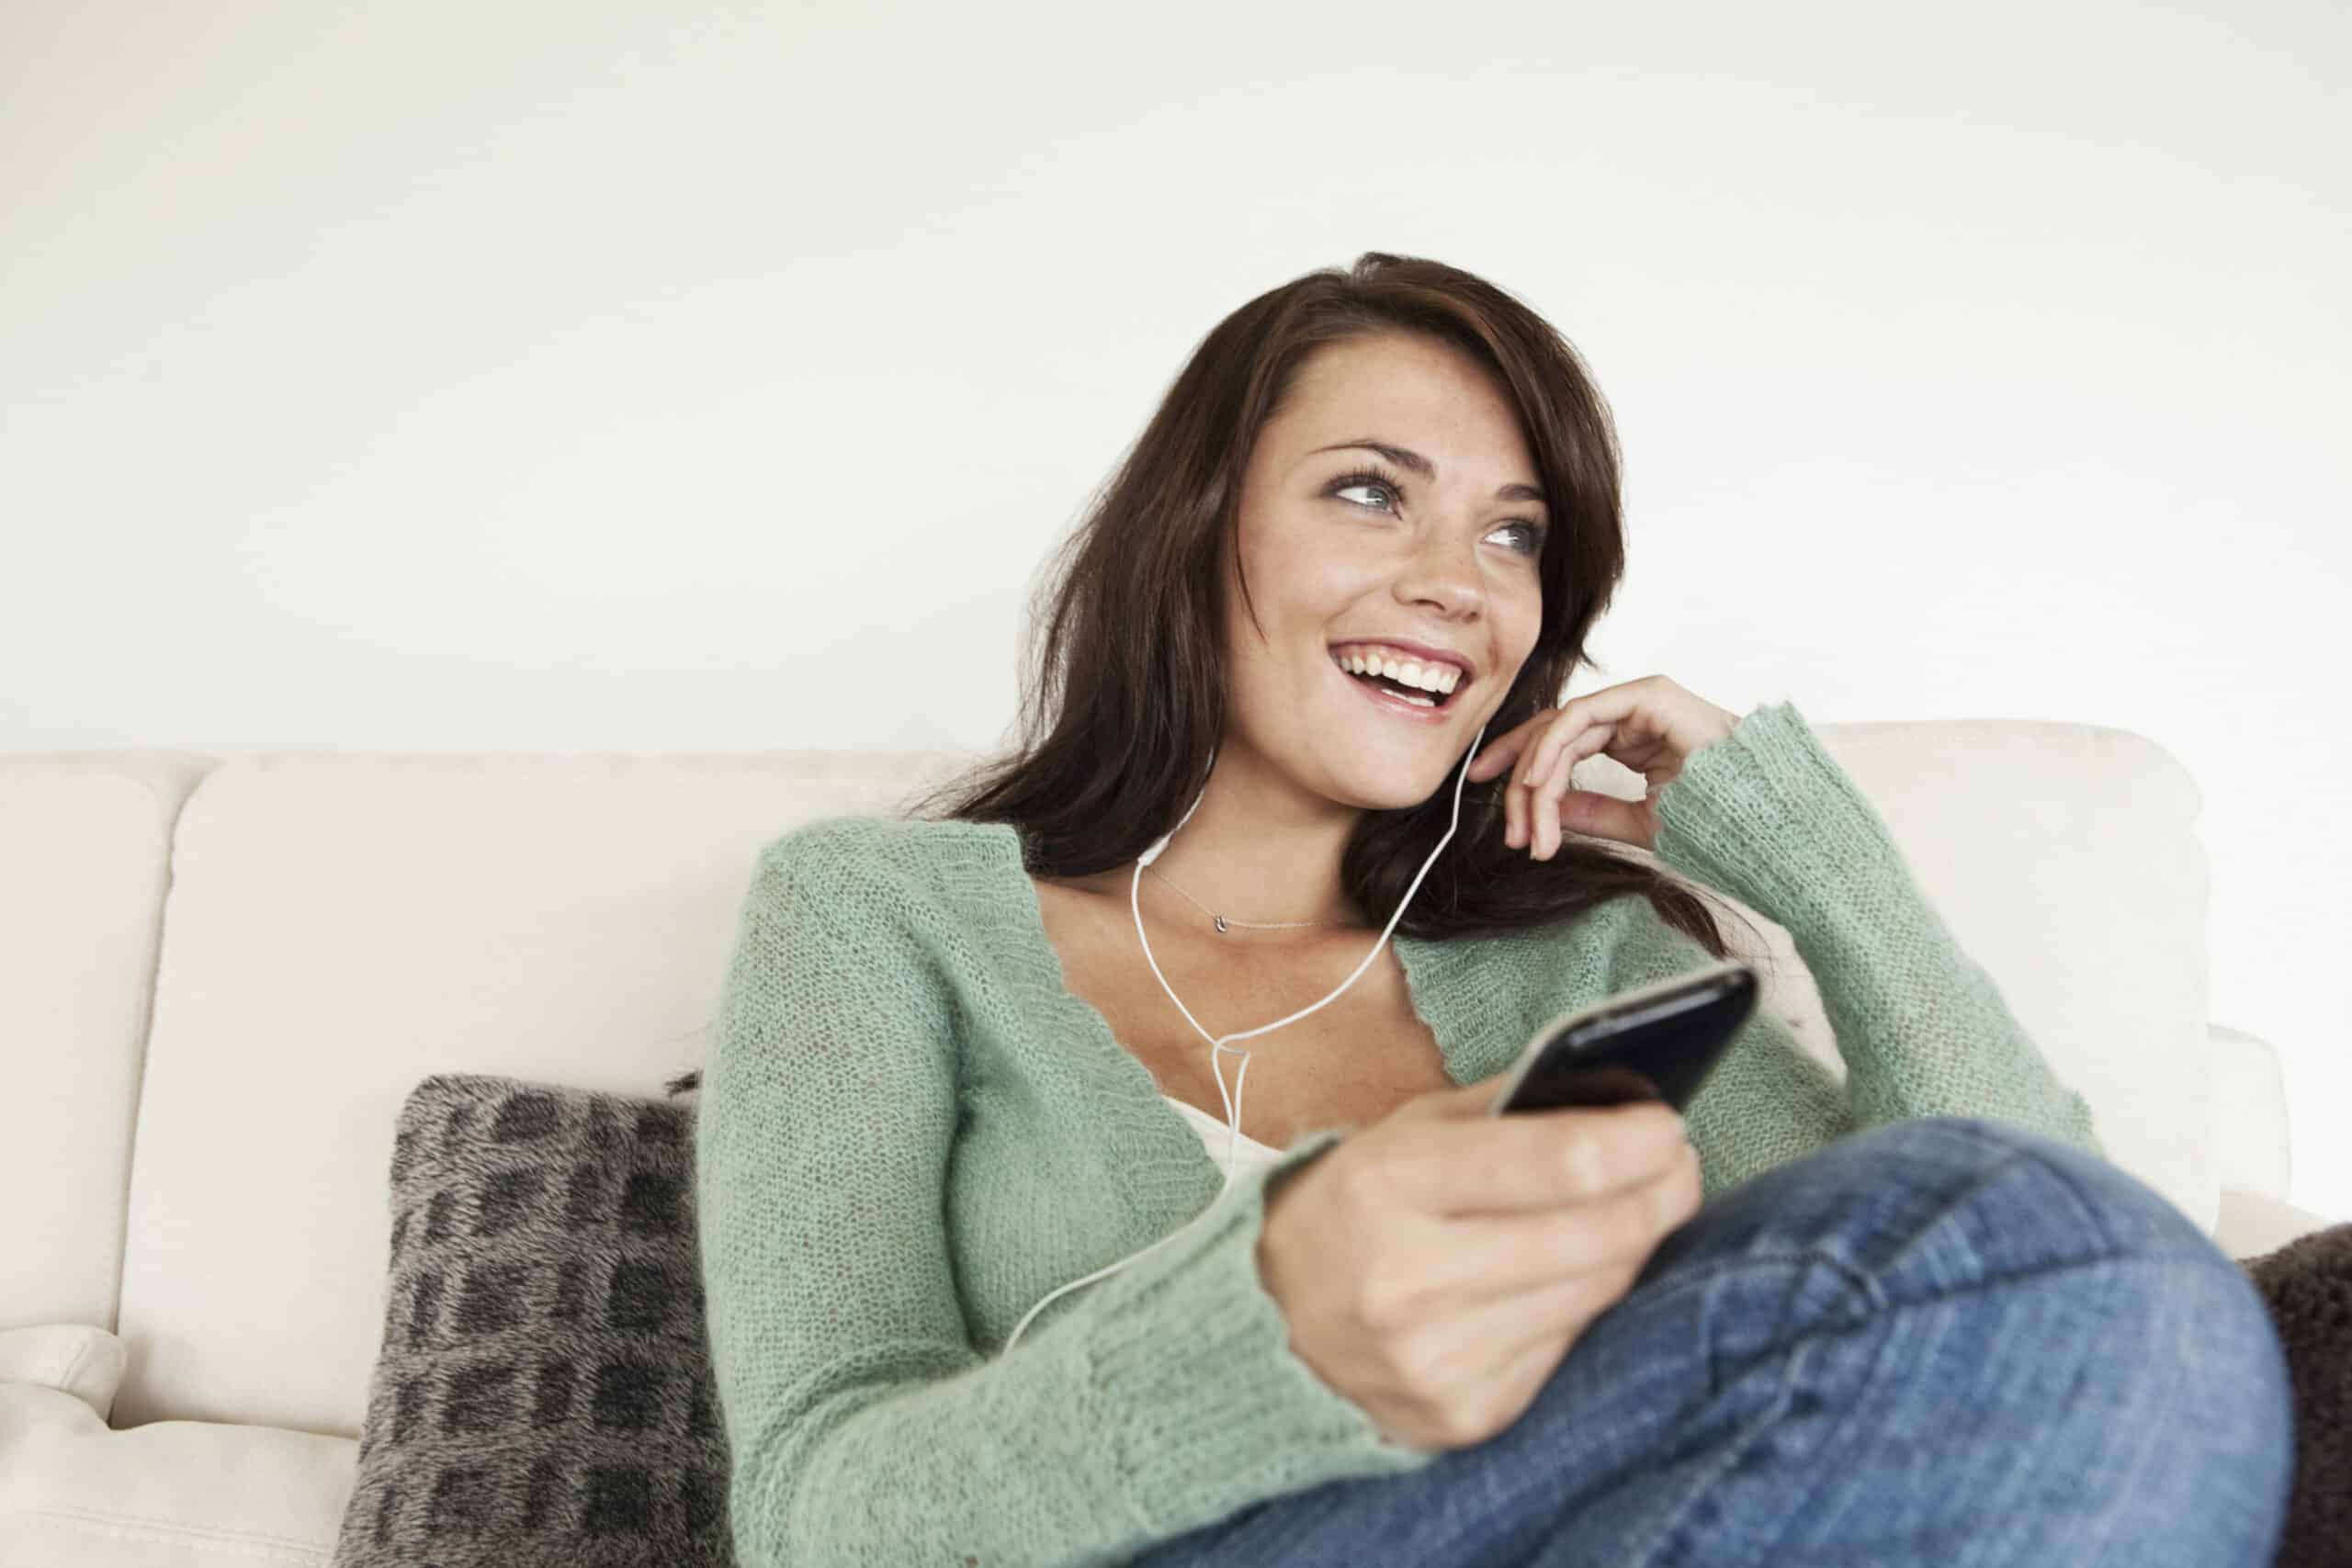 Eine Frau im grünen Pullover sitzt lächelnd auf einem Sofa, hält ein Smartphone in der Hand und trägt Kopfhörer. Sie scheint ein Gespräch zu genießen oder etwas zu hören. © Fotografie Tomas Rodriguez